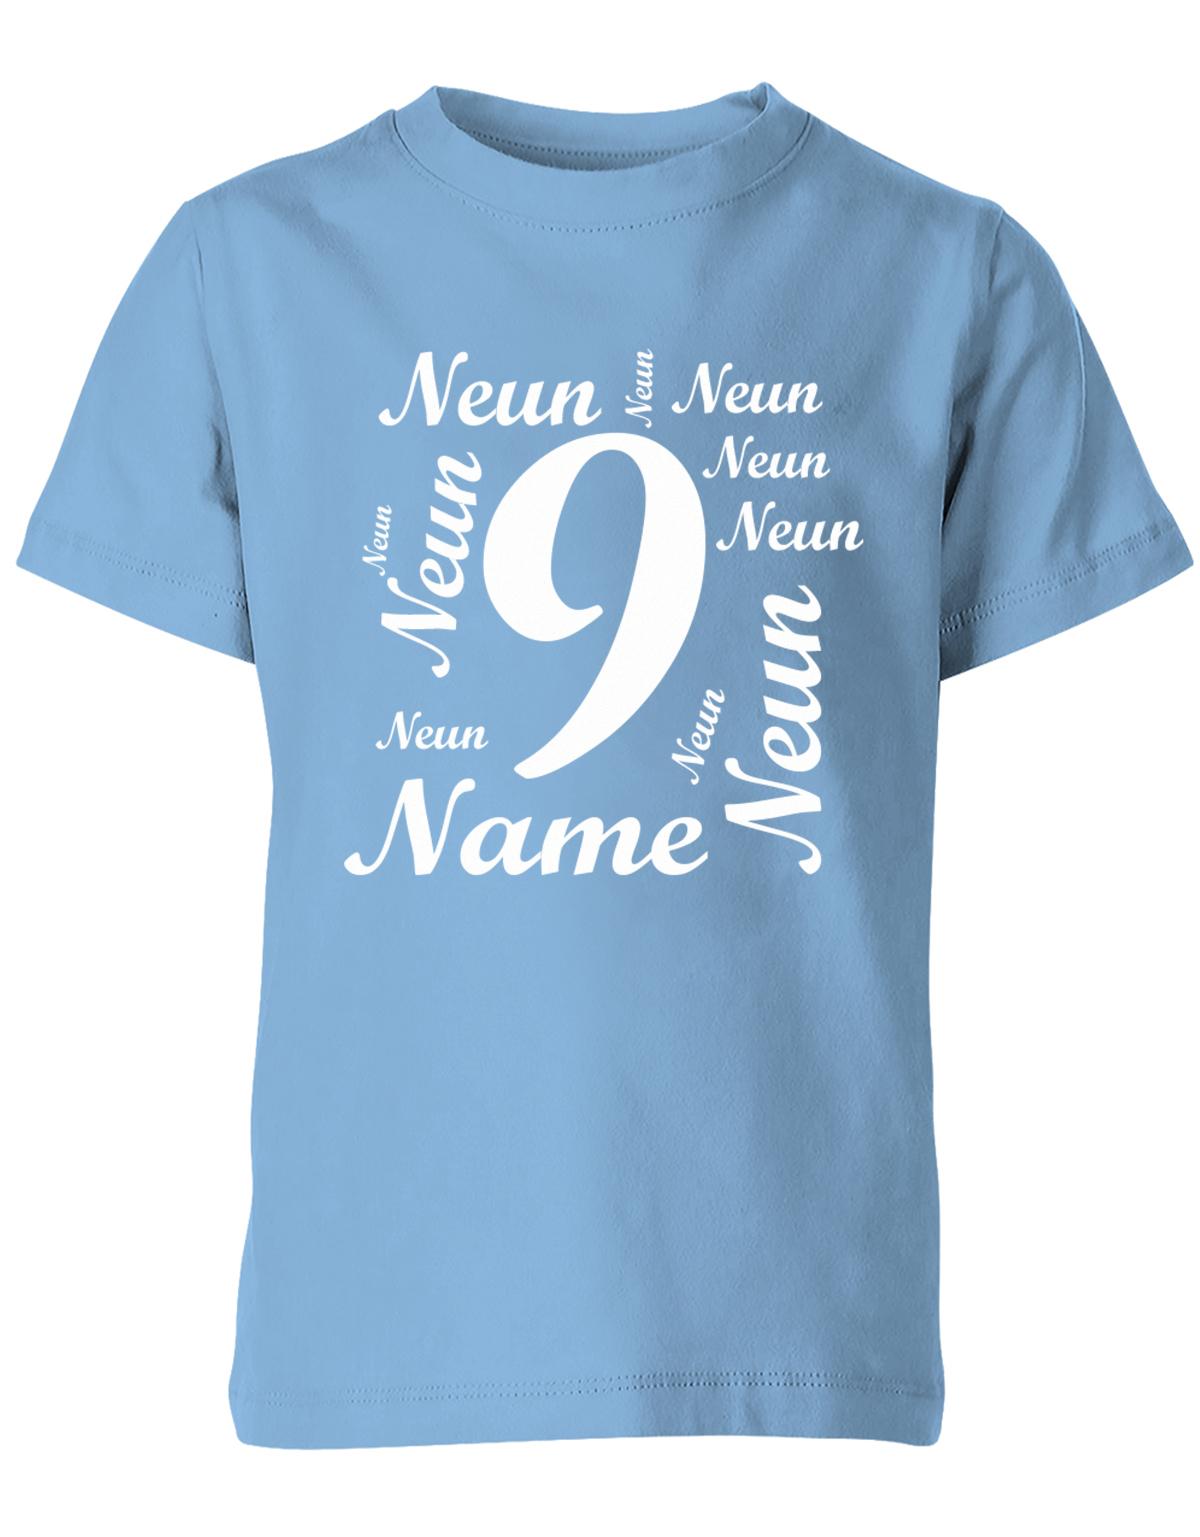 ich-bin-9-viele-neunen-mit-name-geburtstag-kinder-shirt-hellblau